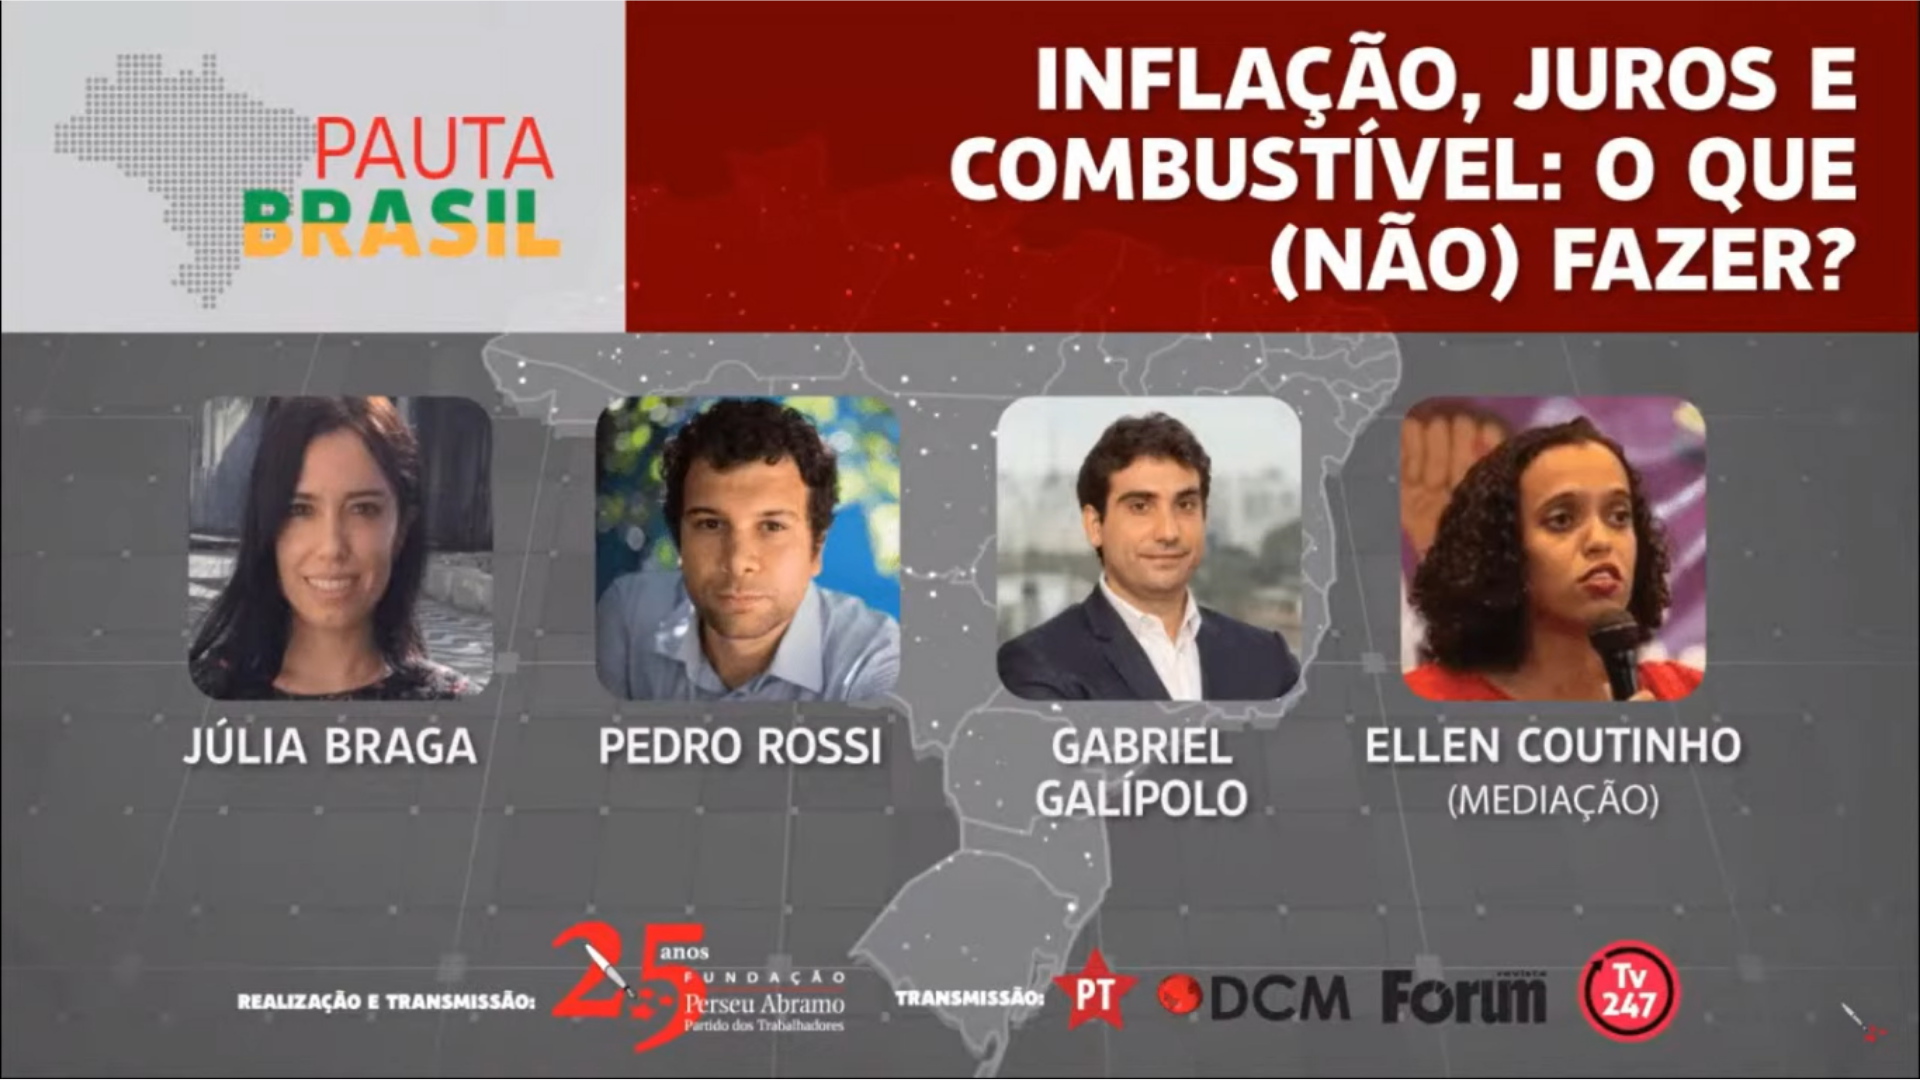 Inflação, juros e combustível: O que (não) fazer?. Print da tela do banner do Pauta Brasil, nos tons cinza e vermelho, com a foto dos participantes em quadrados no centro da tela.